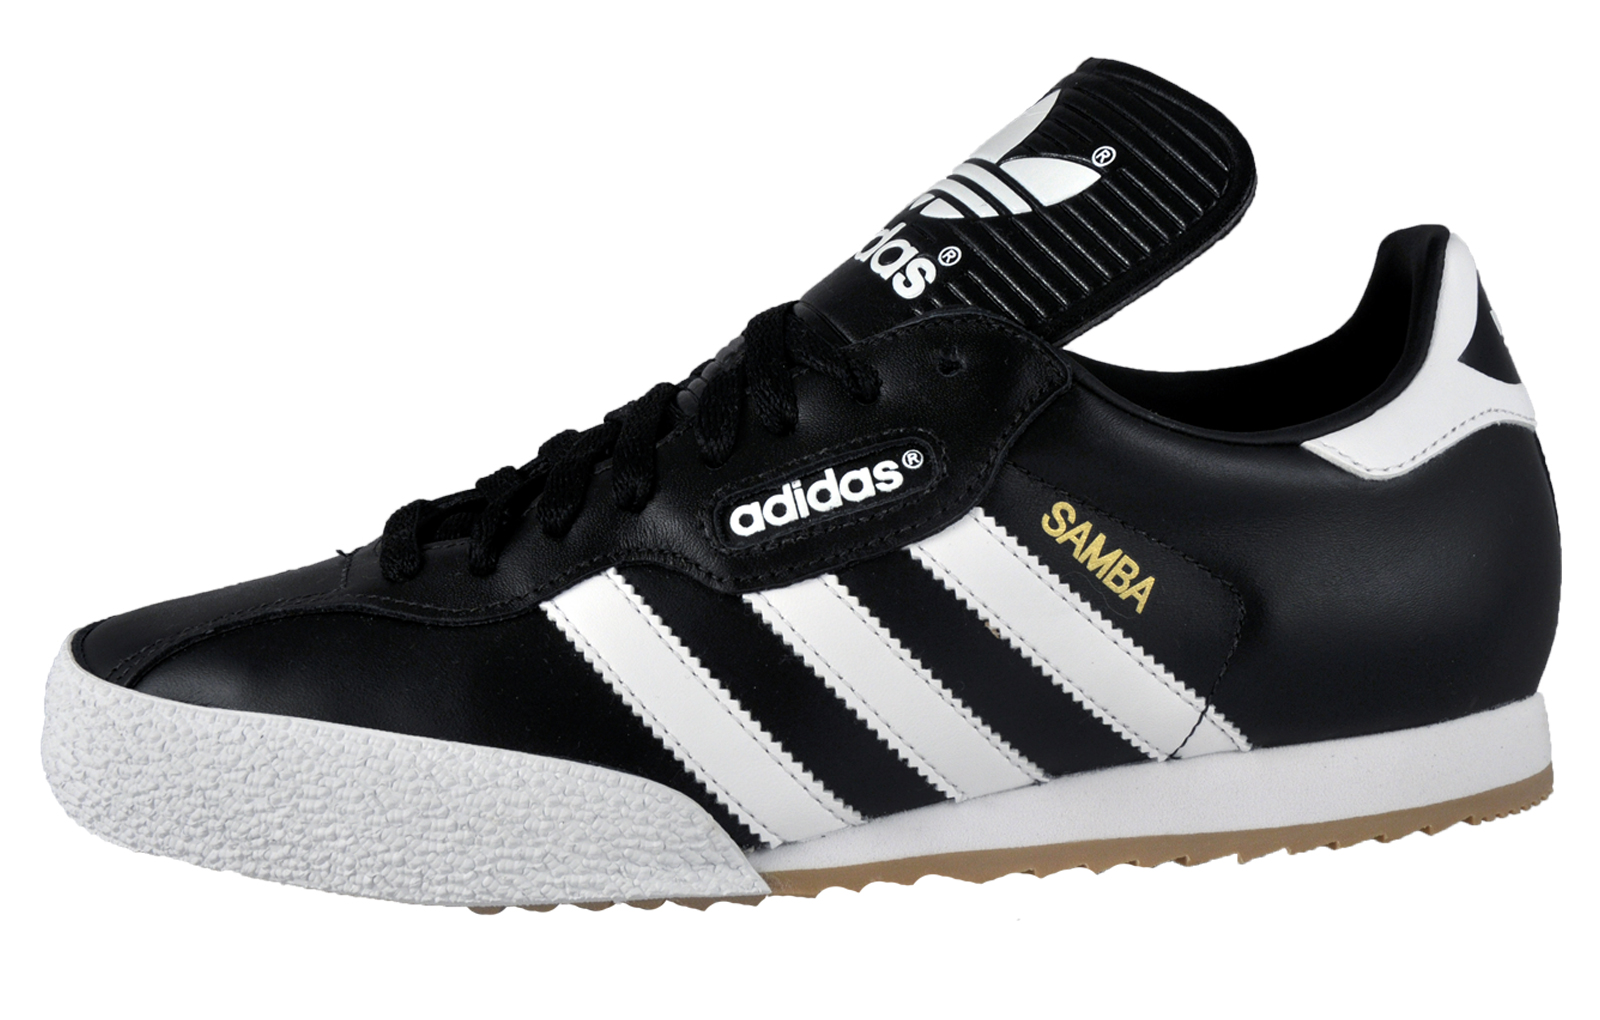 Adidas Originals Mens Samba Super Leather Trainers * AUTHENTIC * | eBay